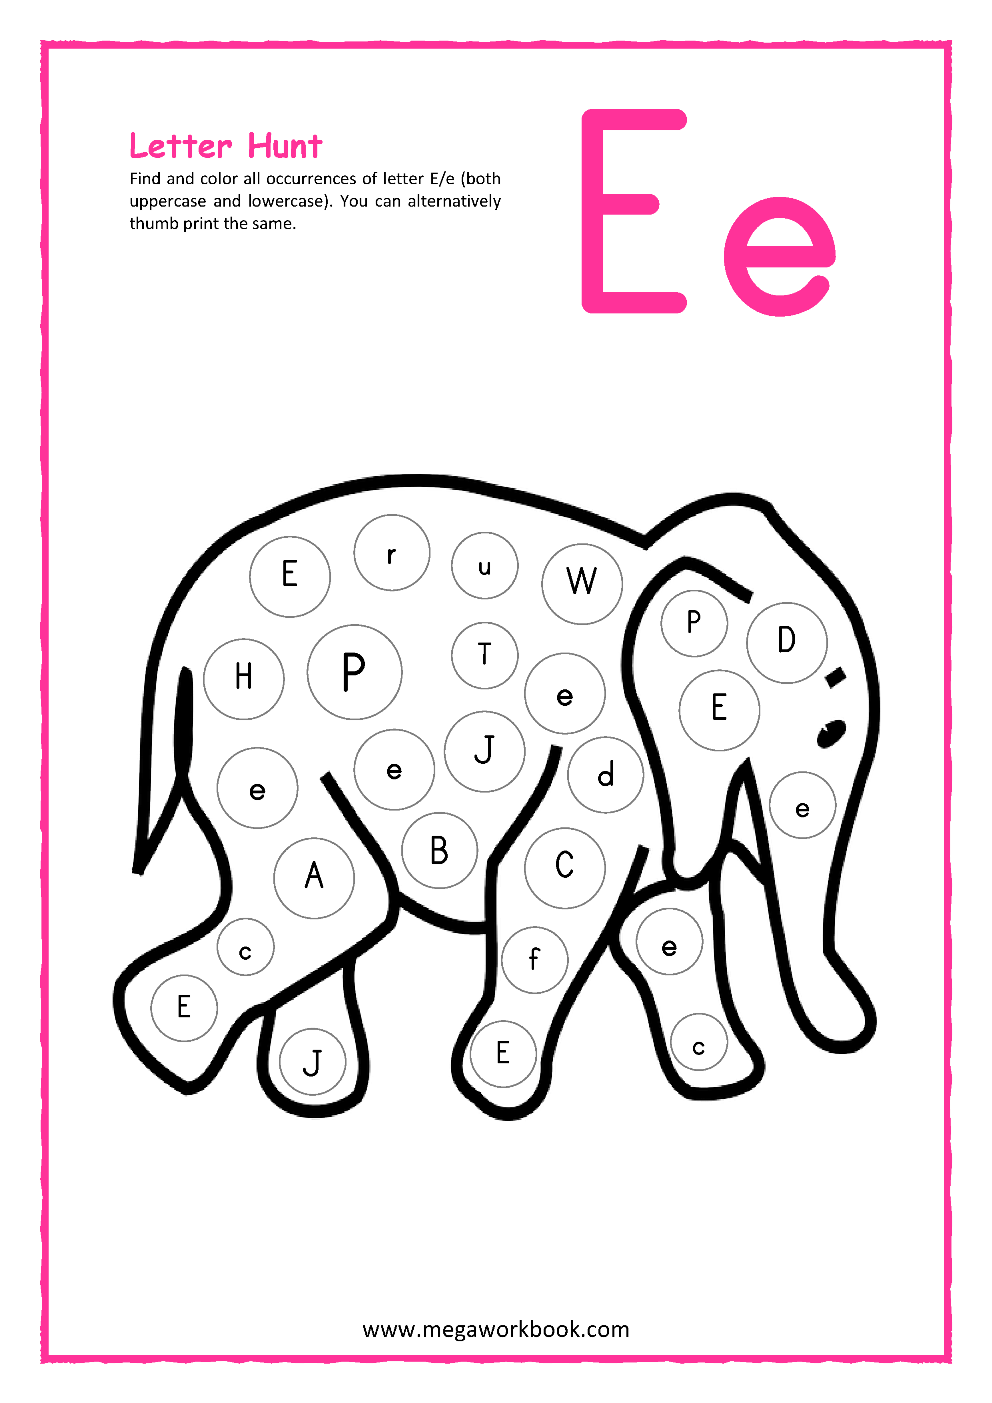 Letter E Activities Letter E Worksheets Letter E Activities For Preschoolers Letter E 